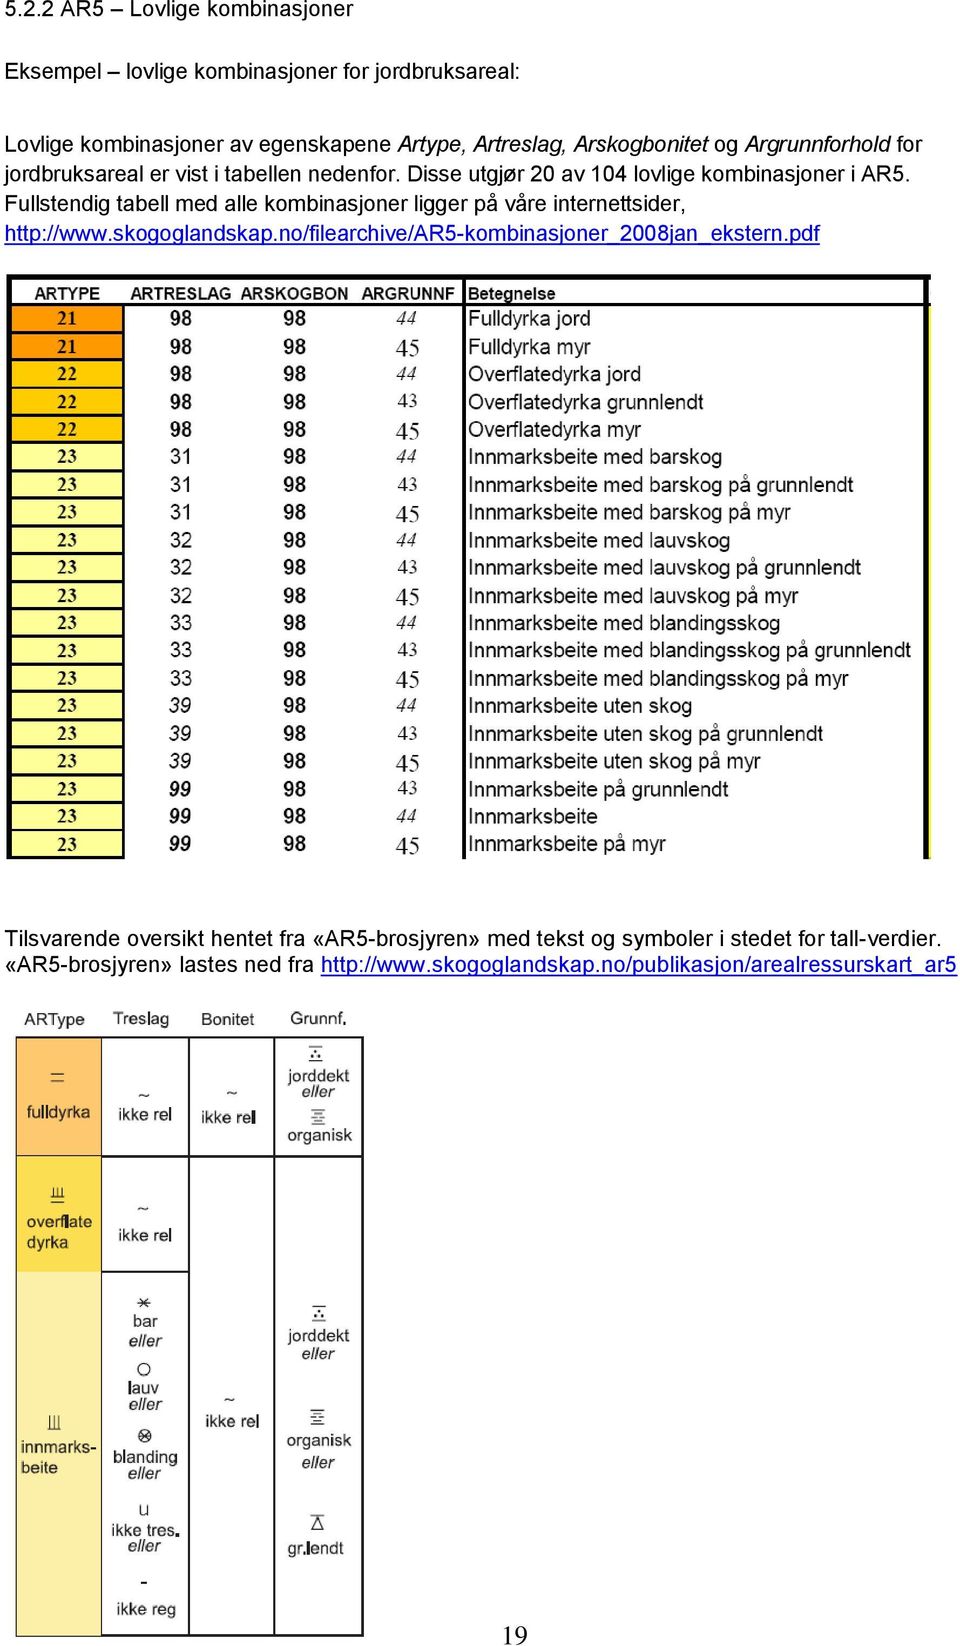 Fullstendig tabell med alle kombinasjoner ligger på våre internettsider, http://www.skogoglandskap.no/filearchive/ar5-kombinasjoner_2008jan_ekstern.